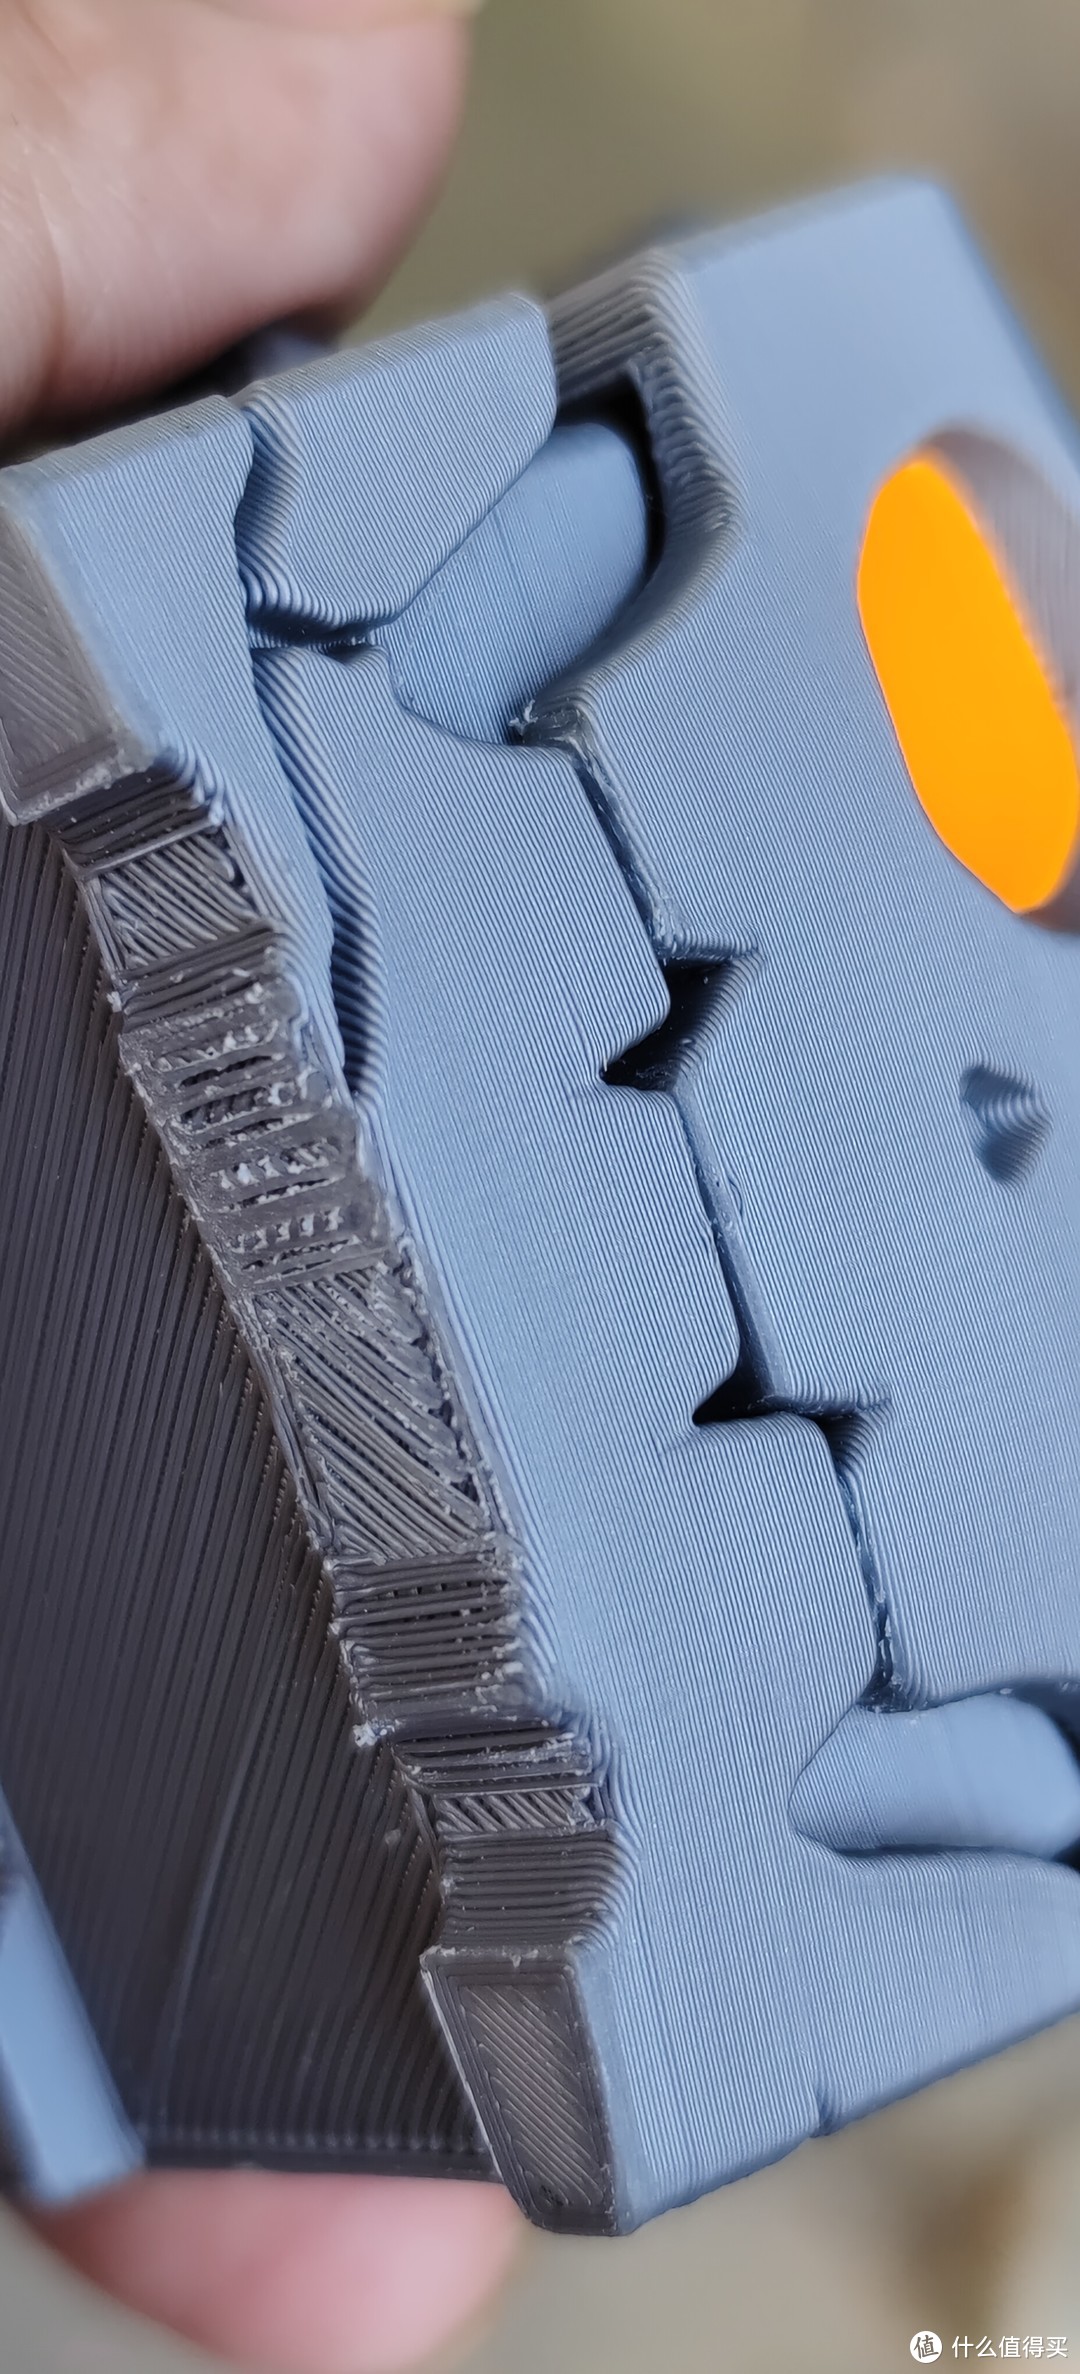 塞尔达里面的宝箱～传说荒野之息波克布林宝箱桌面摆件 NS卡带盒周边 波克布林宝箱 手工diy塑料3D打印制品